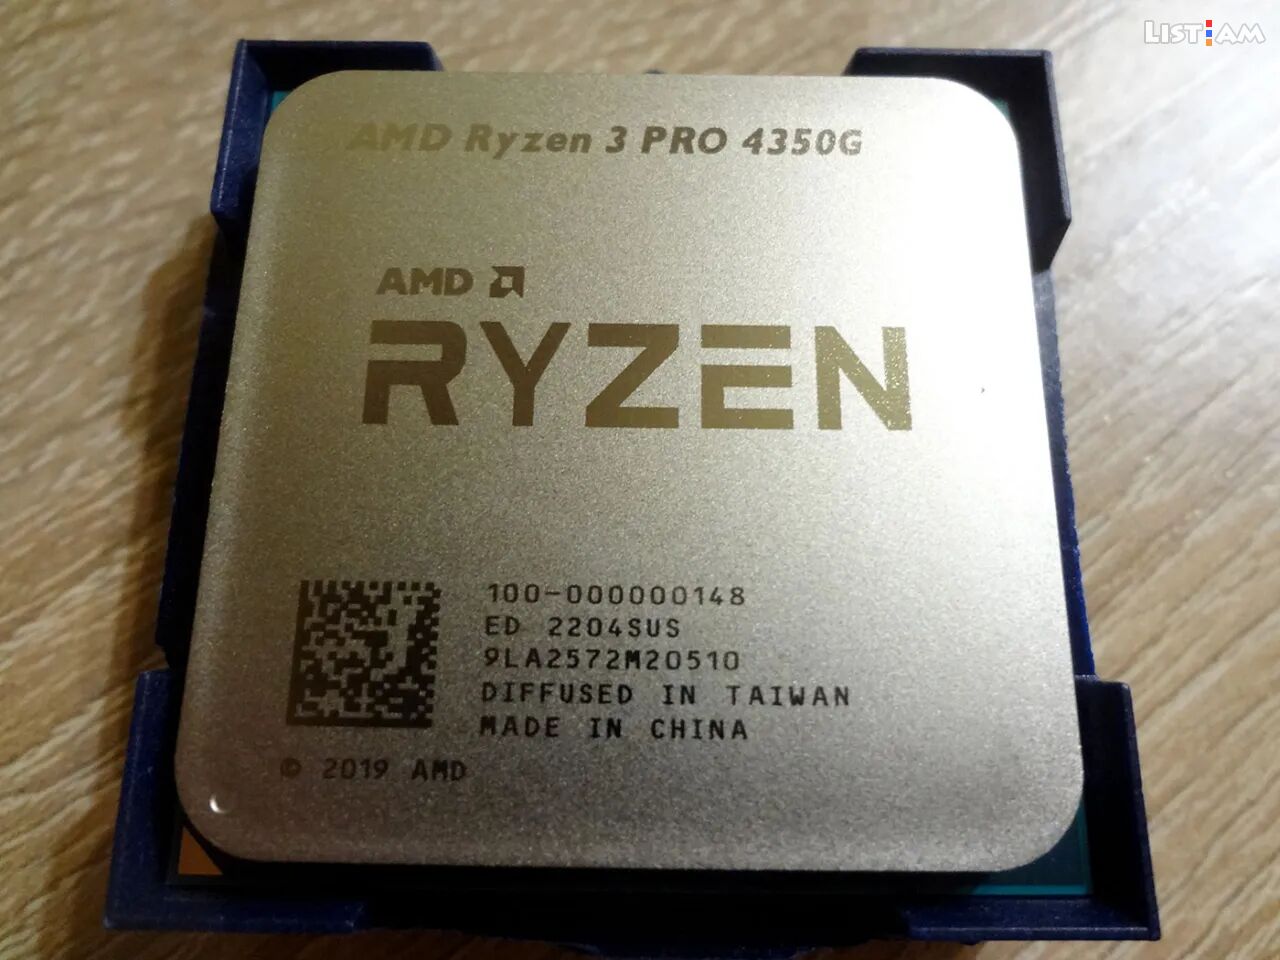 AMD Ryzen 3 Pro